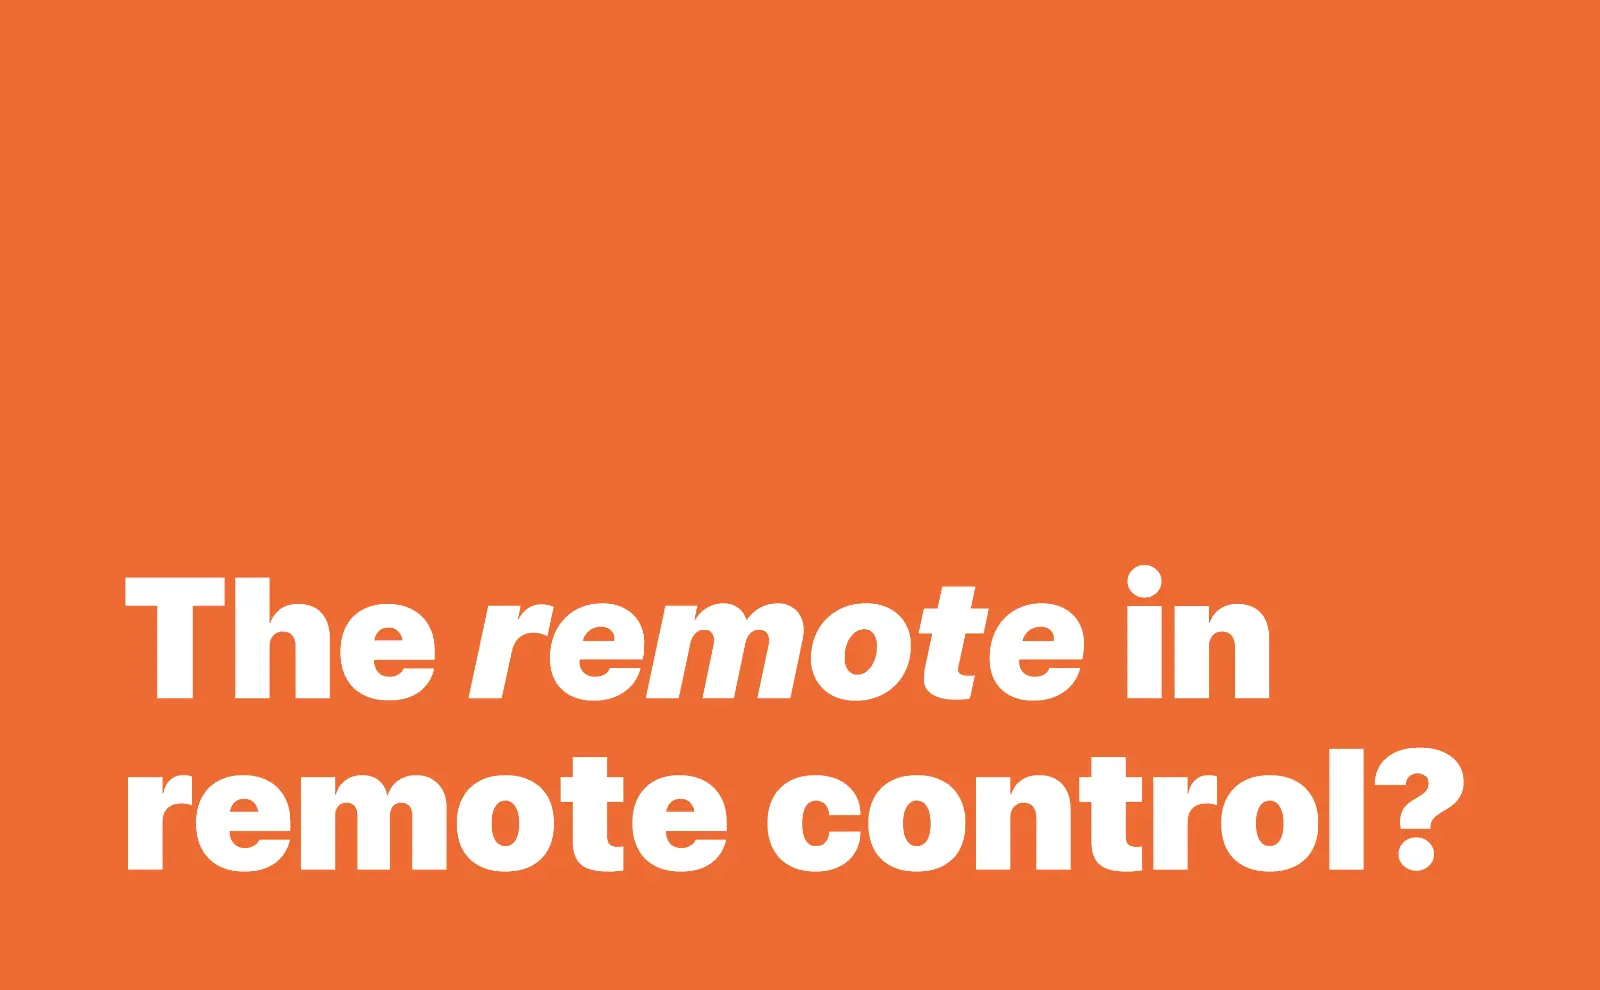 The remote in remote control?